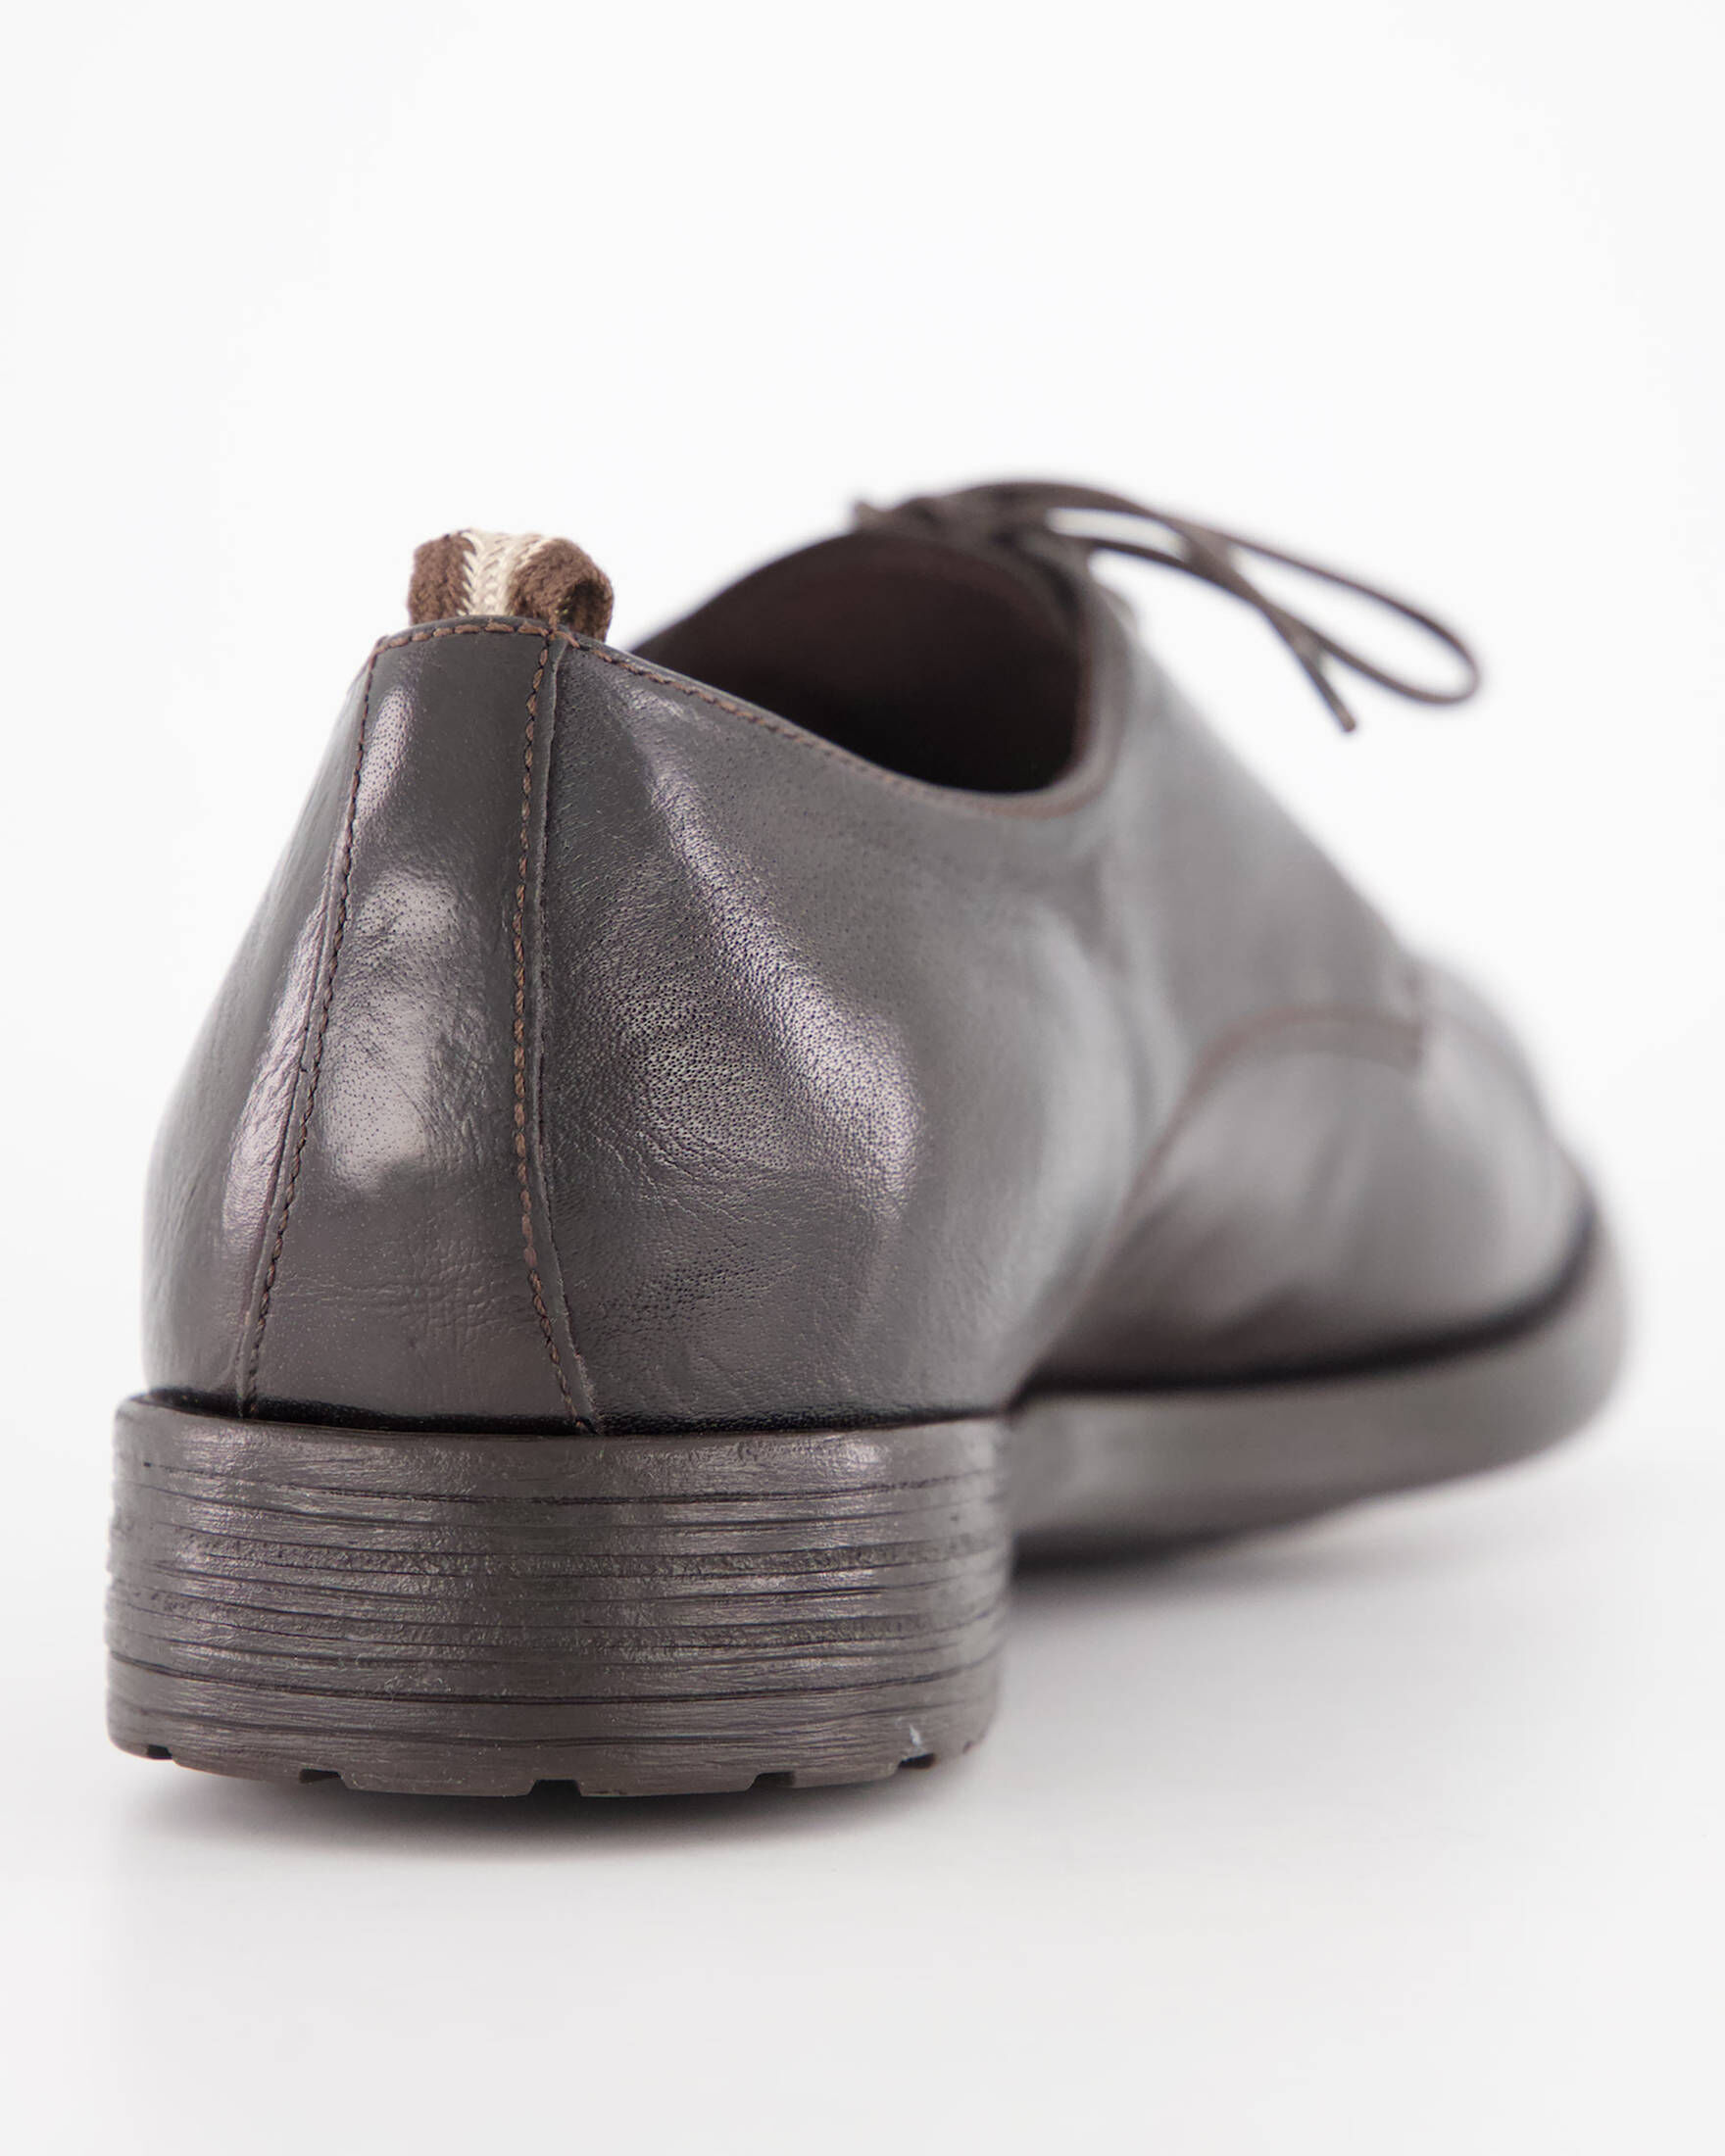 Officine Creative Ignis Halbschuhe in Braun für Herren Herren Schuhe Schnürschuhe Oxford Schuhe 